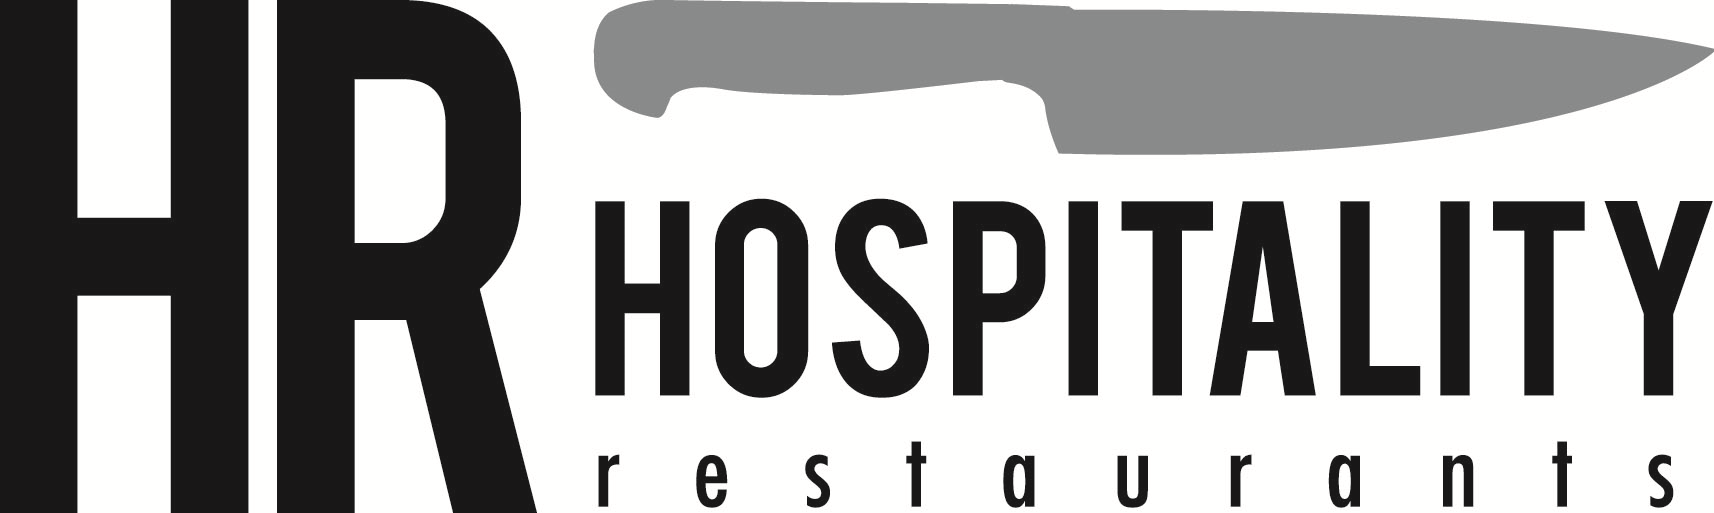 Hospitality Restaurants Company Logo